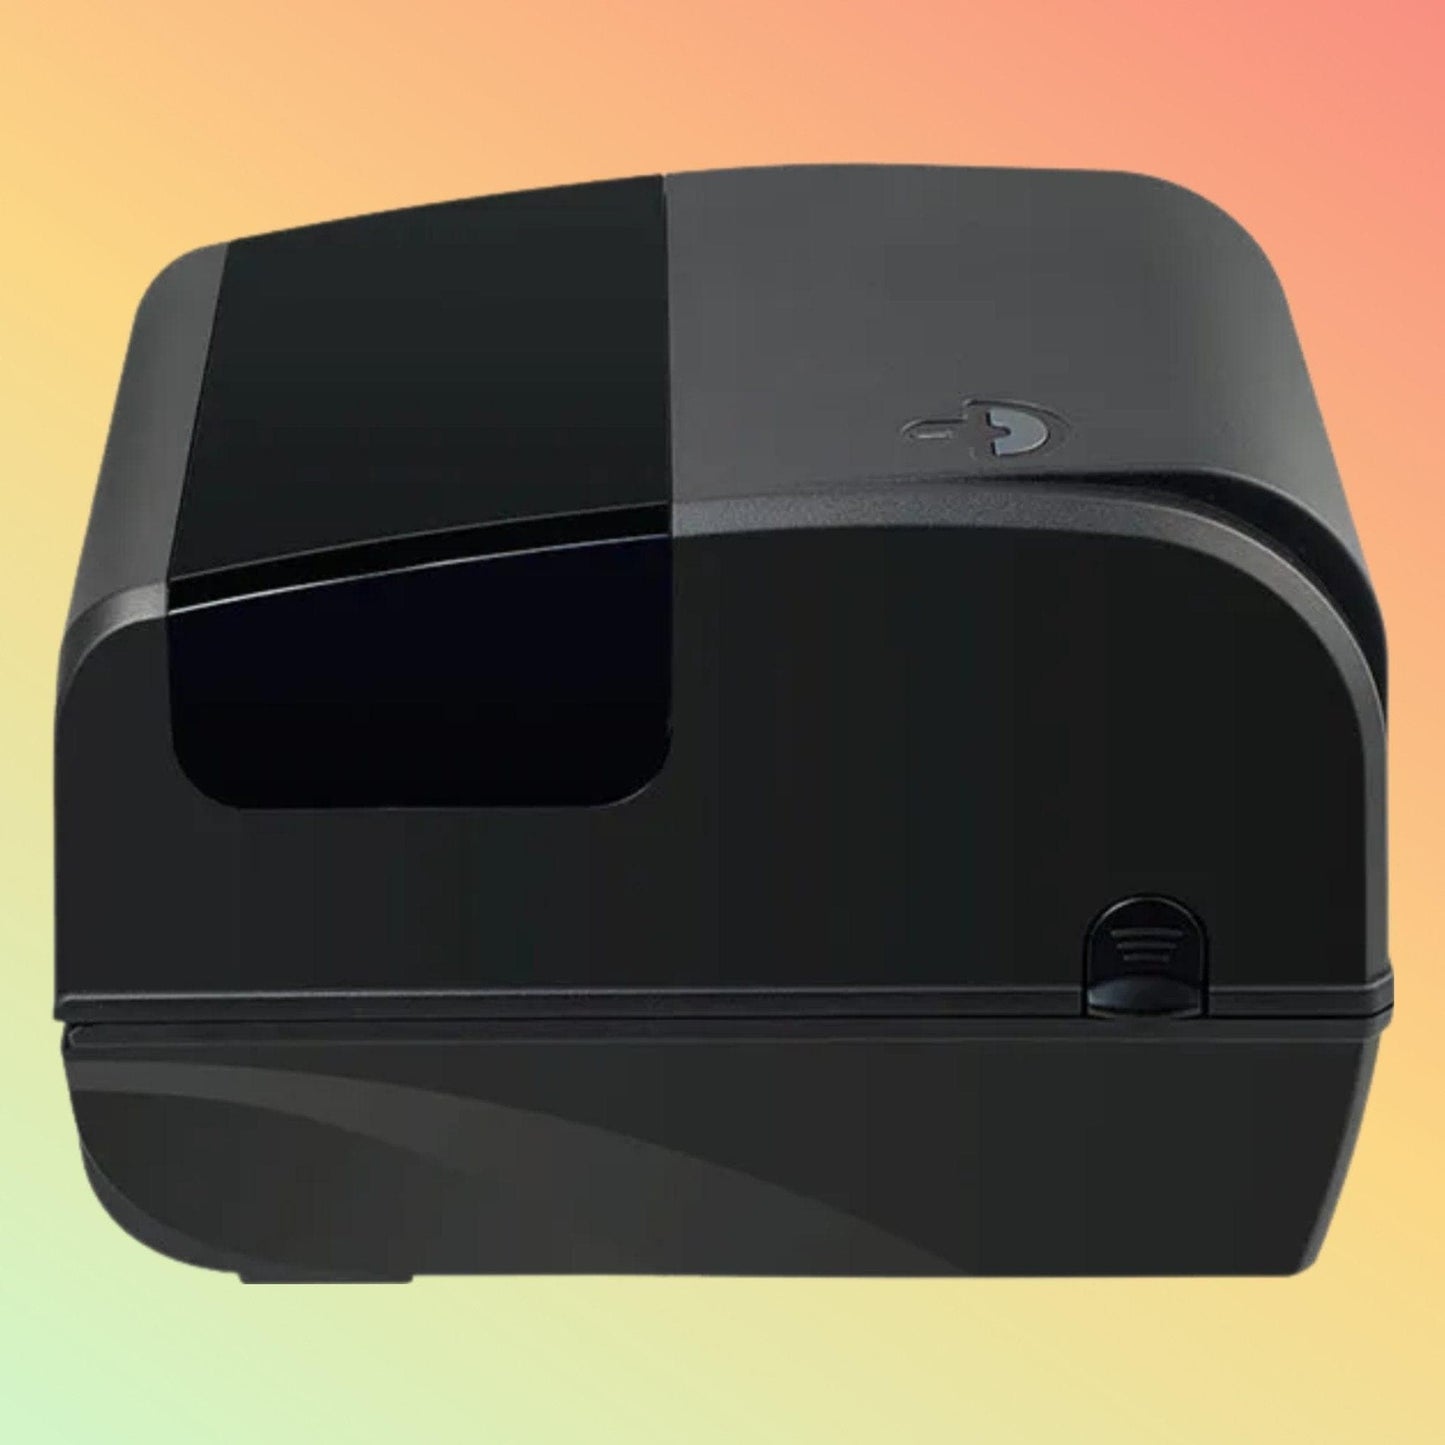 Label Printer - Xprinter XP-TT426B - Neotech